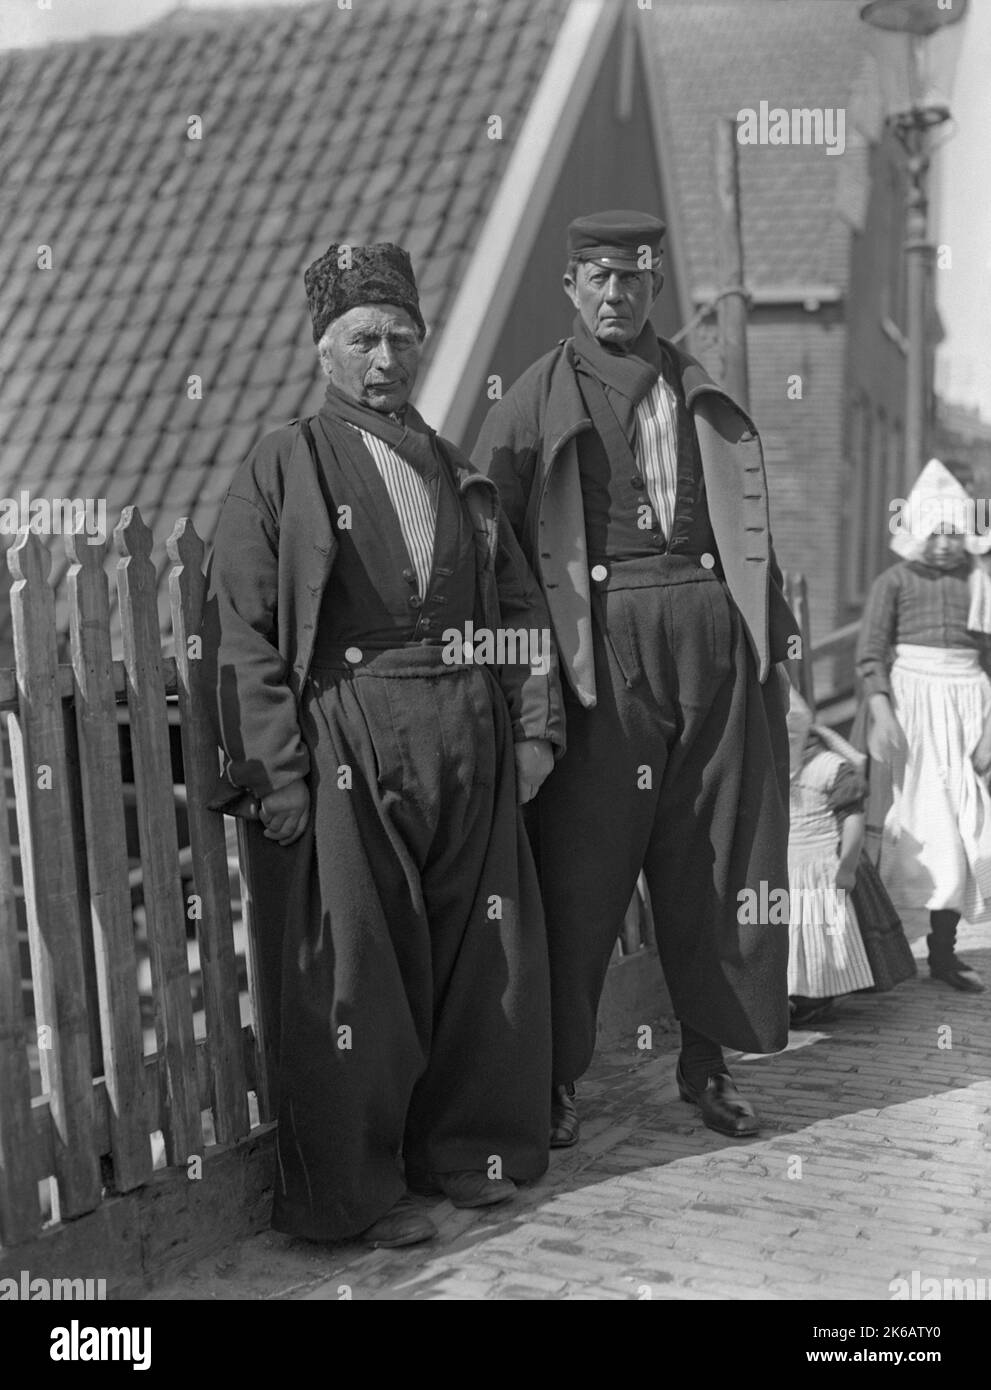 Zwei Männer in traditioneller Kleidung in den Niederlanden c. 1930. Zwei Mädchen stehen hinter ihnen. Männer tragen ein traditionelles Kostüm mit einem langärmeligen Button-up-Hemd zusammen mit einer baggy, plissierten, oft aus Wolle gefertigten Vorderhose, mit silbernen Knöpfen an der quadratischen Frontklappe, Halstuch und Hut – die Form und das Design des Hutes variiert je nach Region. Zu den traditionellen Kostümen gehören in der Regel ein Paar Lederschuhe oder Holzschuhe. Der Stil der traditionellen Kleidung, die in den Niederlanden getragen wurde, begann im 16.. Und 17.. Jahrhundert – ein Vintage-Foto von 1920s/30s. Stockfoto